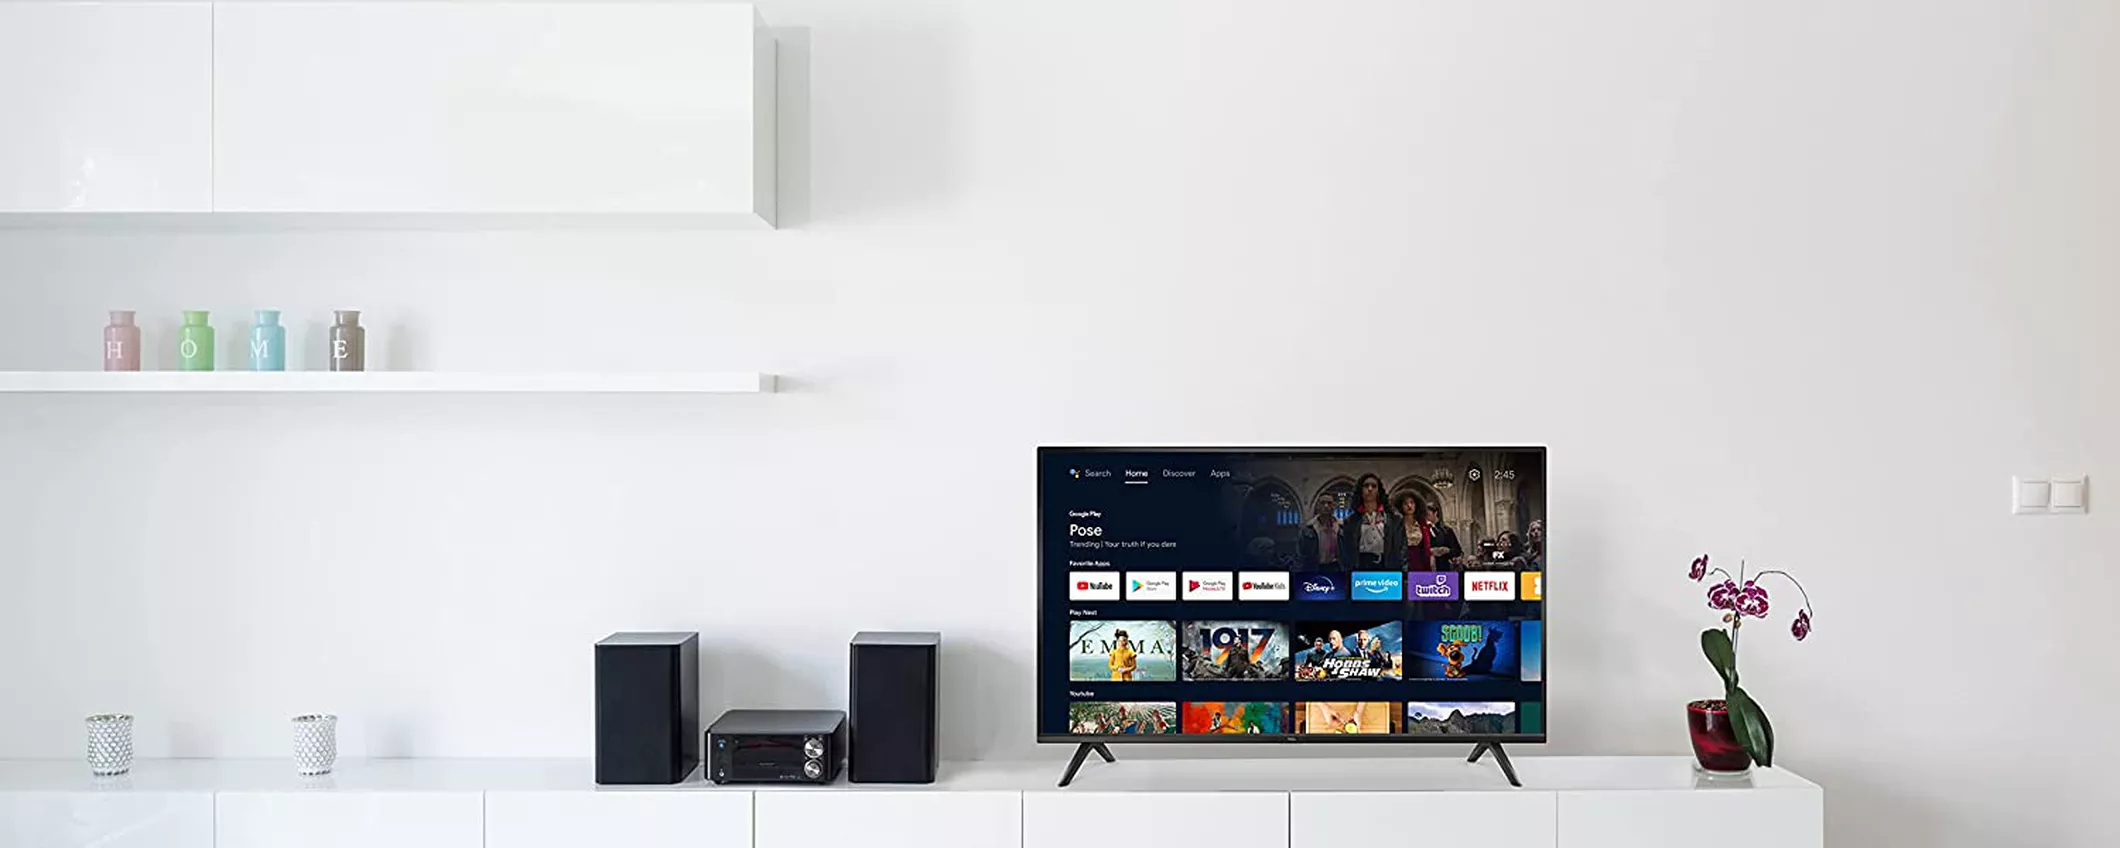 La tua nuova TOP smart TV TCL da 40” la compri ora a un prezzo low budget